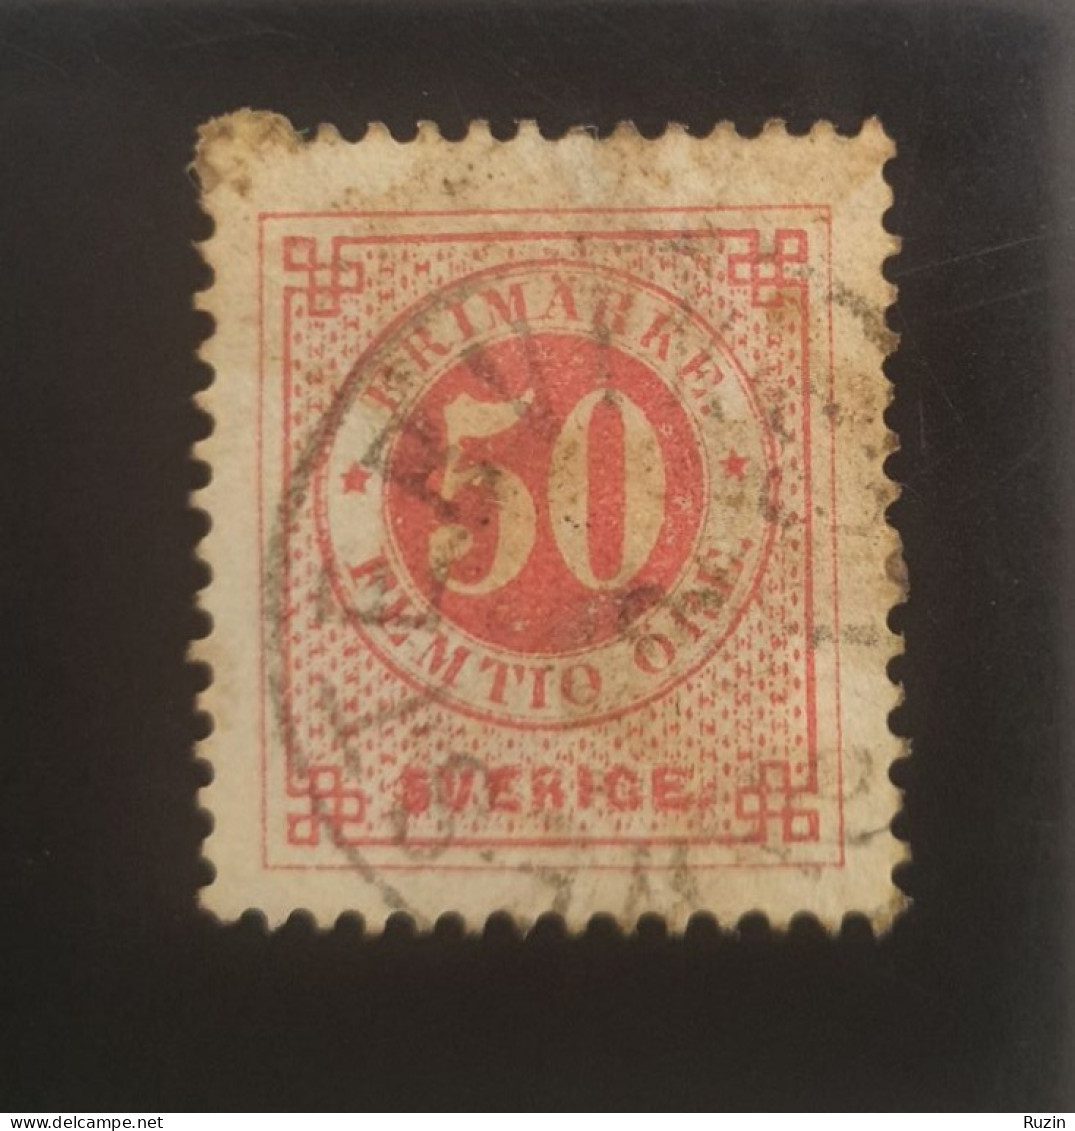 Sweden Stamp - Circle Type 50 öre - Gebraucht